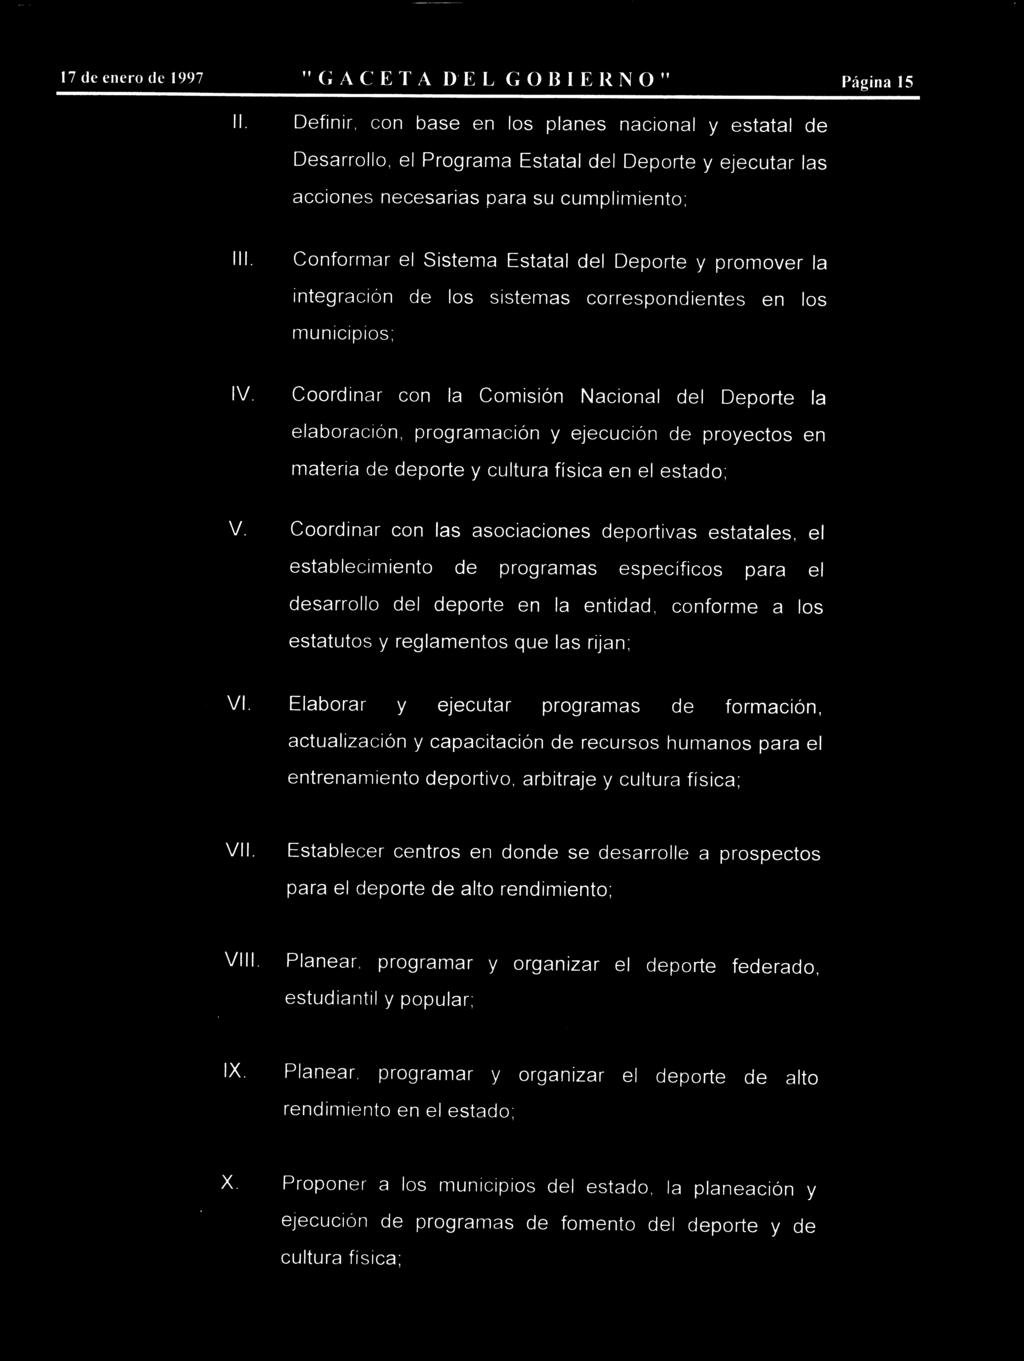 17 de enero de 1997 "GACETA DEL GOBIERNO" Página 15 Definir, con base en los planes nacional y estatal de Desarrollo, el Programa Estatal del Deporte y ejecutar las acciones necesarias para su